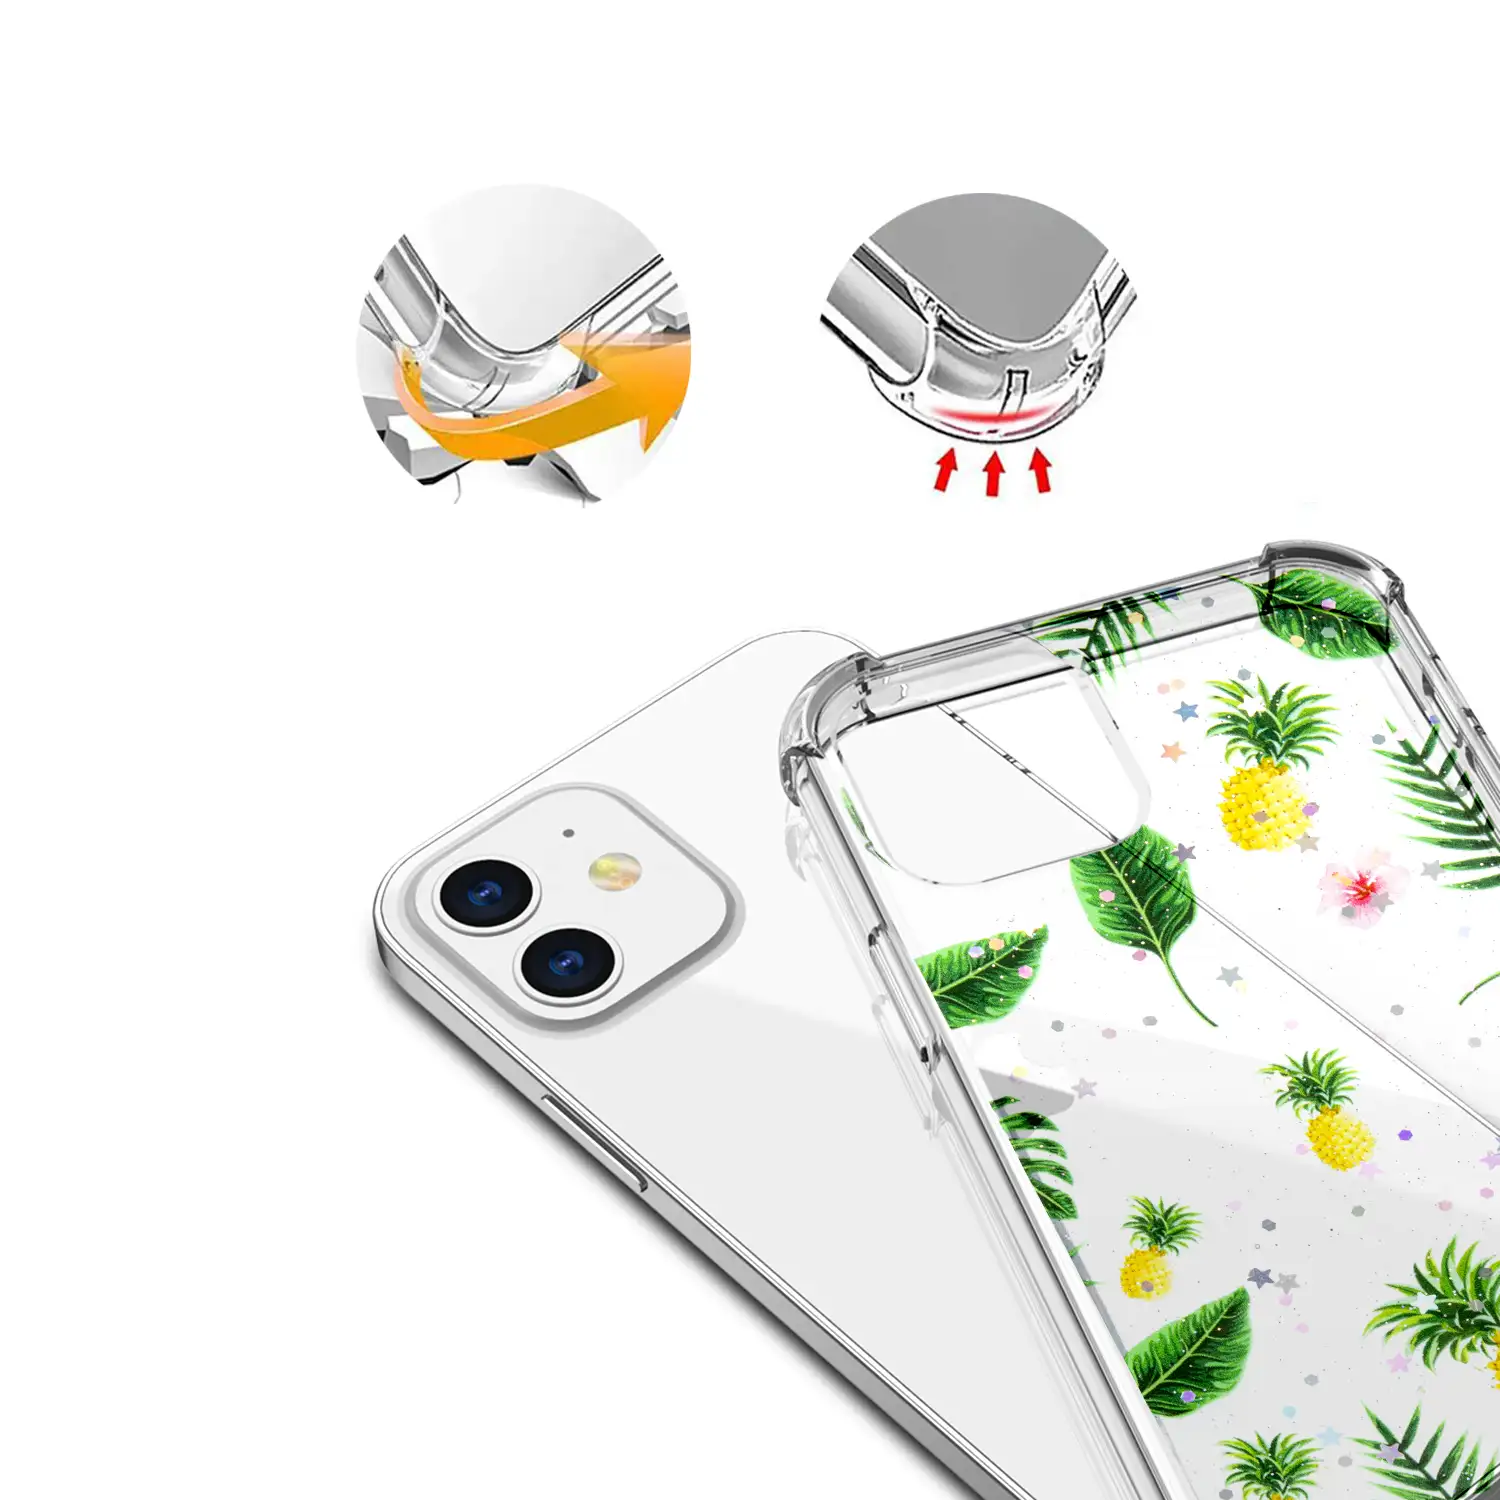 Carcasa de TPU de alta protección con diseño tropical para iPhone 12 Mini